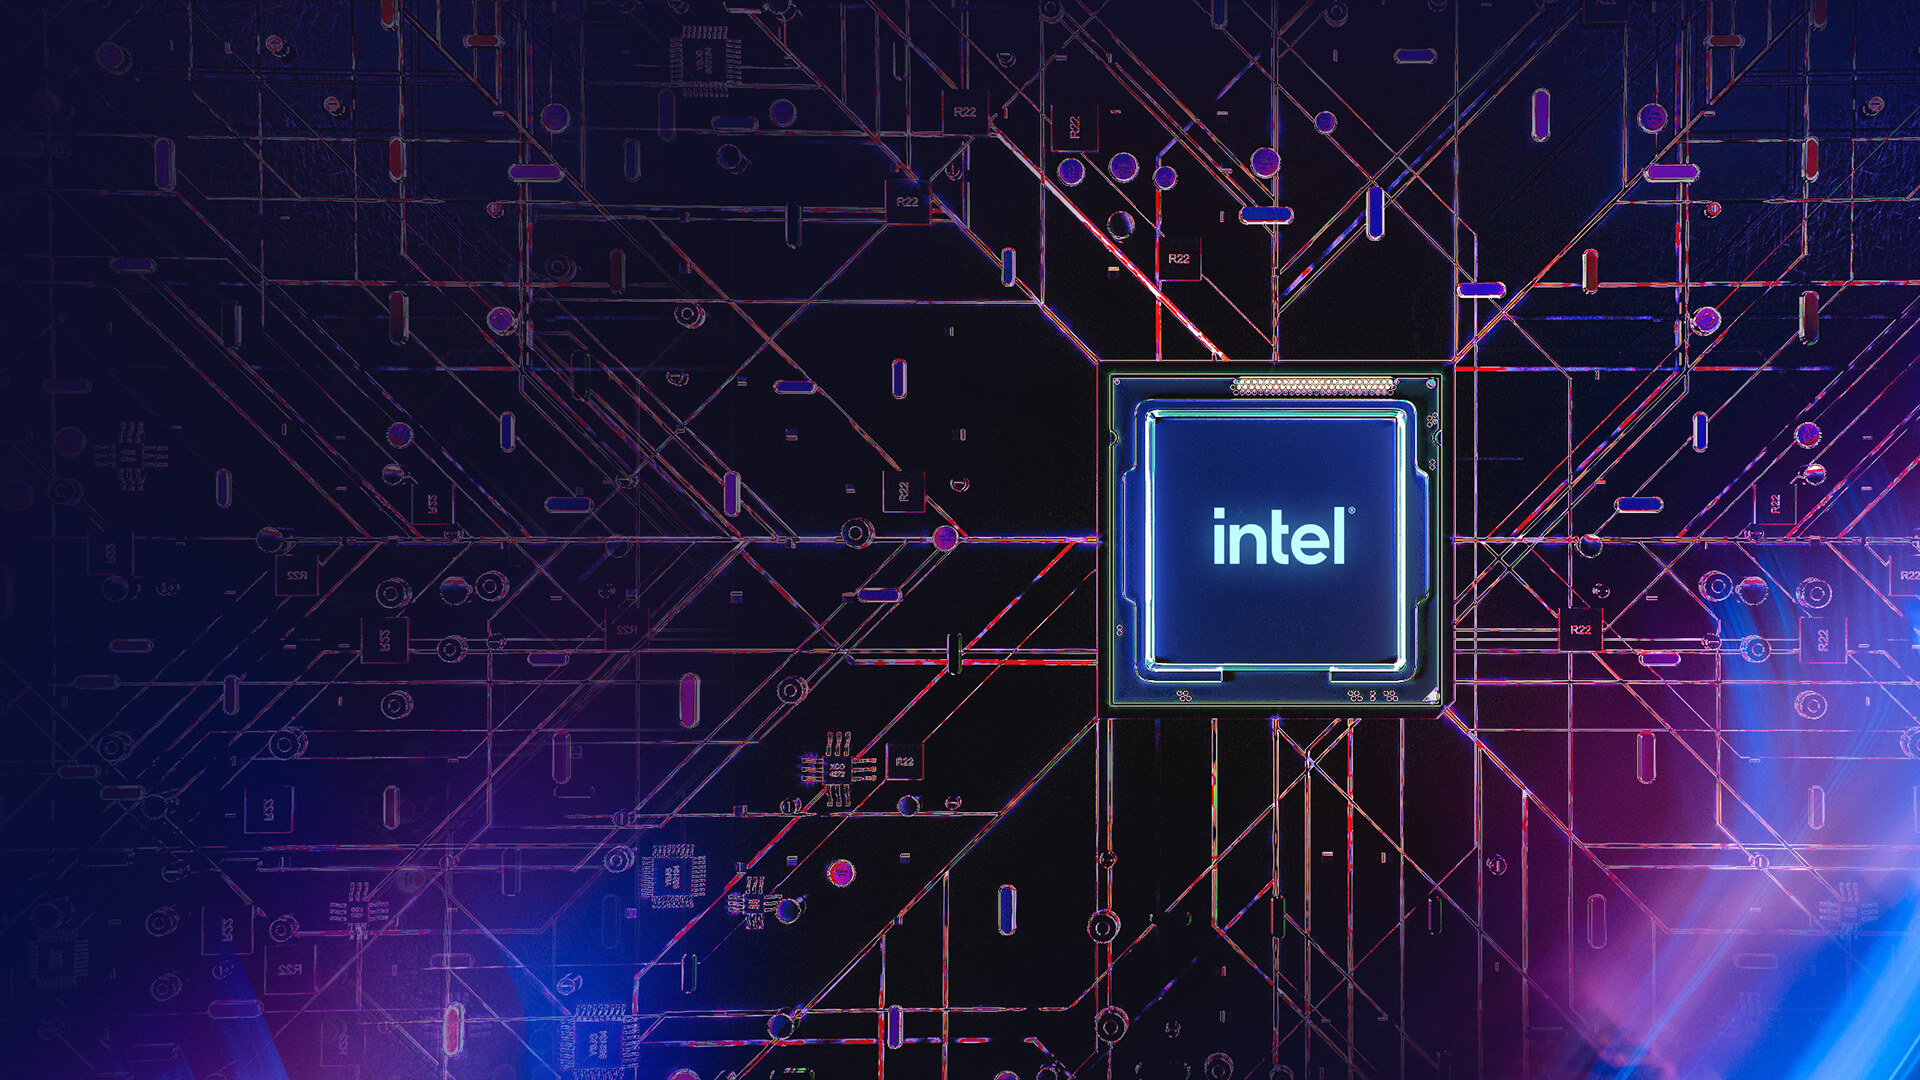 صورة لوحدة المعالجة المركزية Intel فوق لوحة أم منمطة ذات لون أرجواني مع تدفق تيار كهربائي إلى المعالج